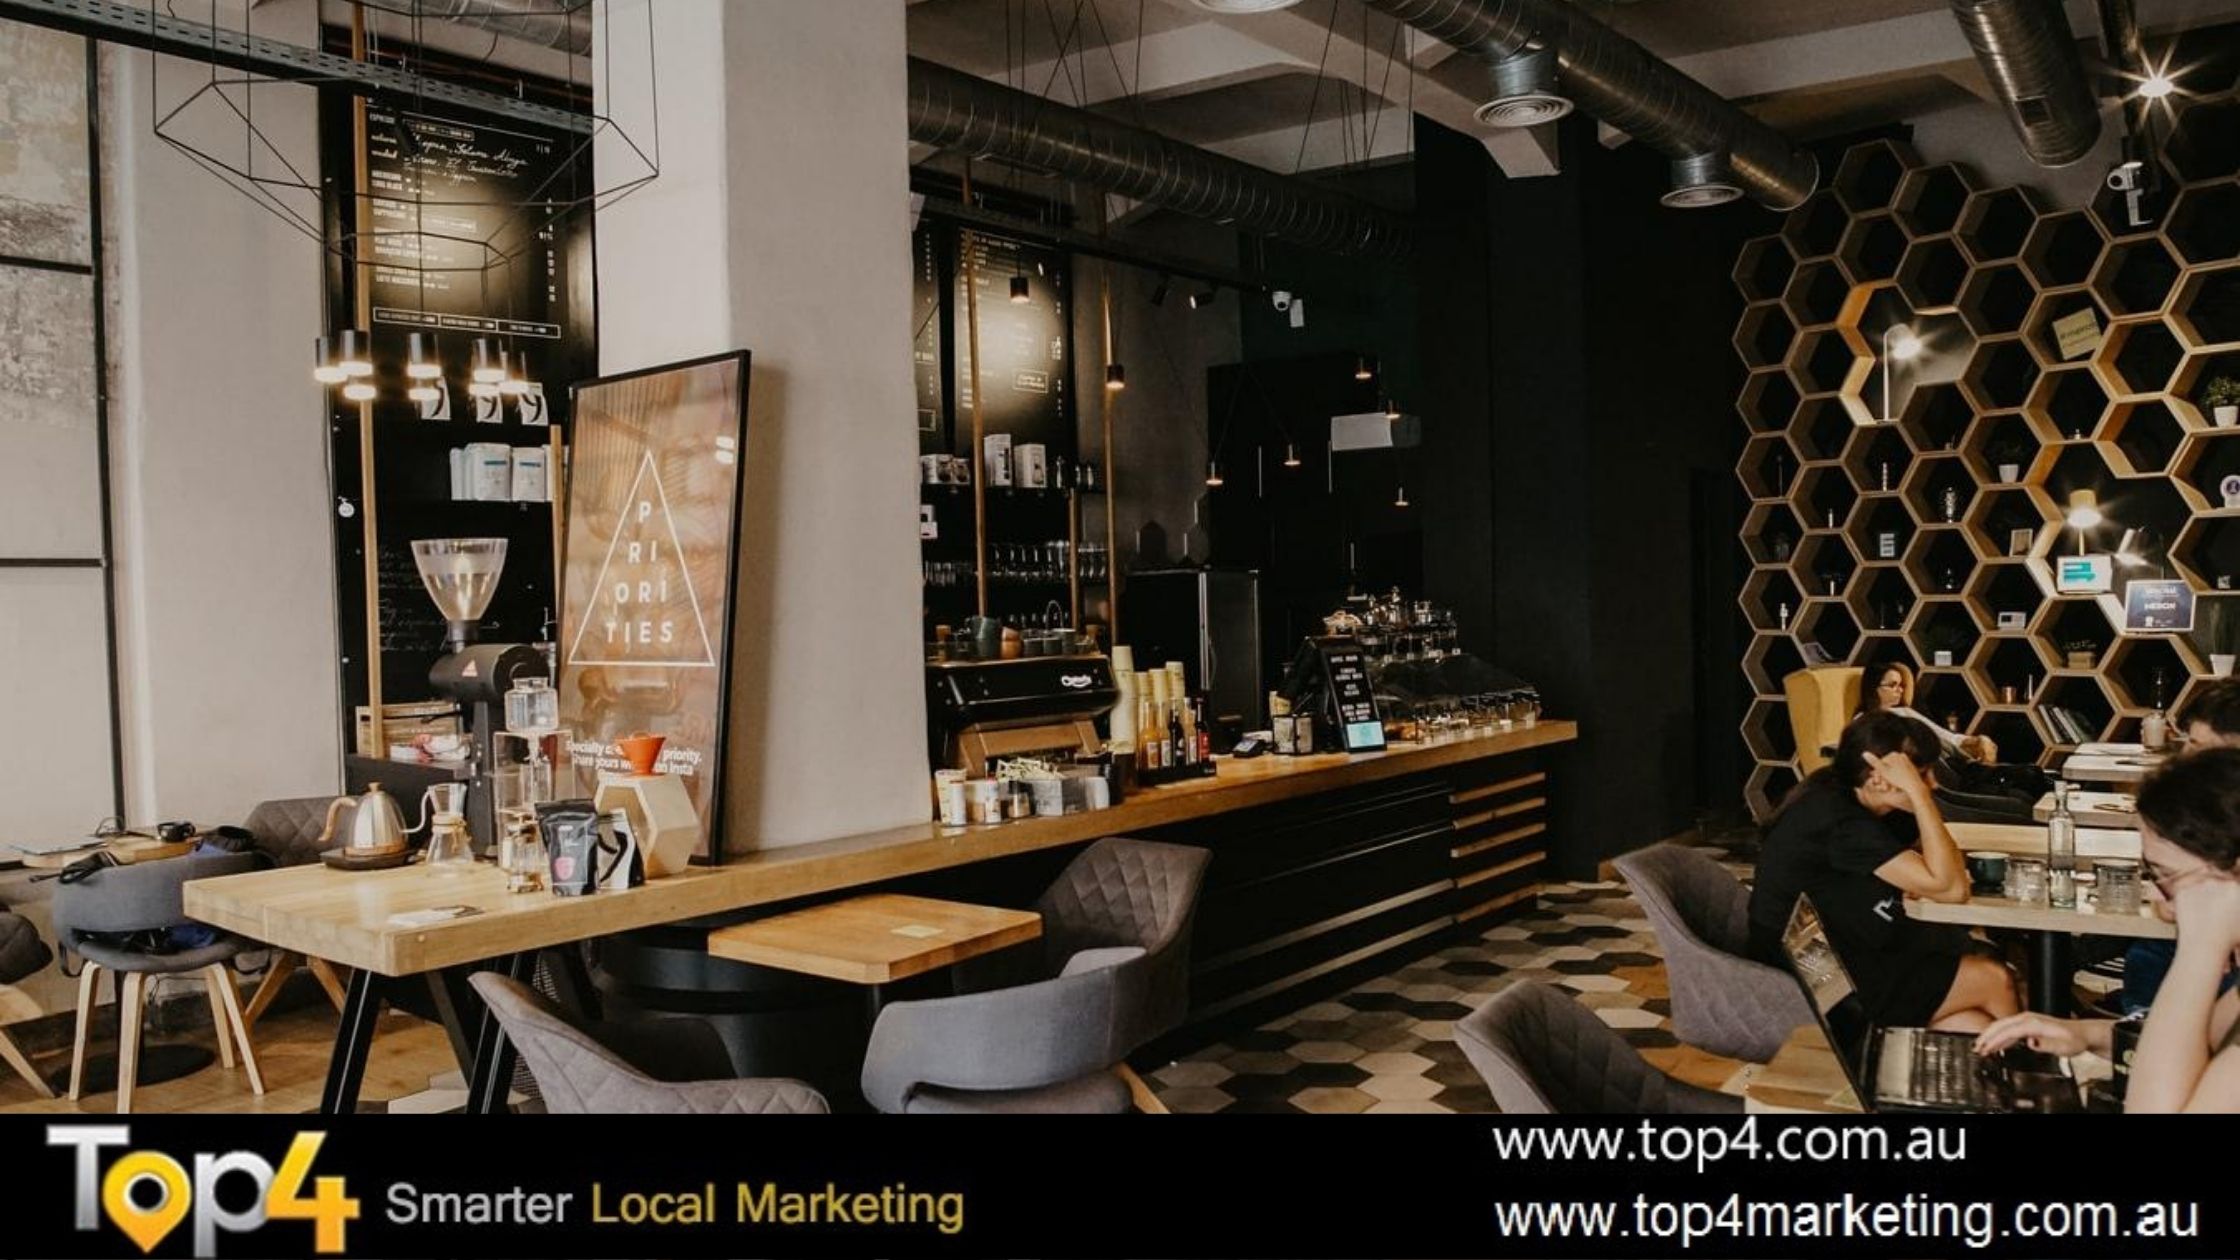 Top4 Restaurants - Top4 Marketing